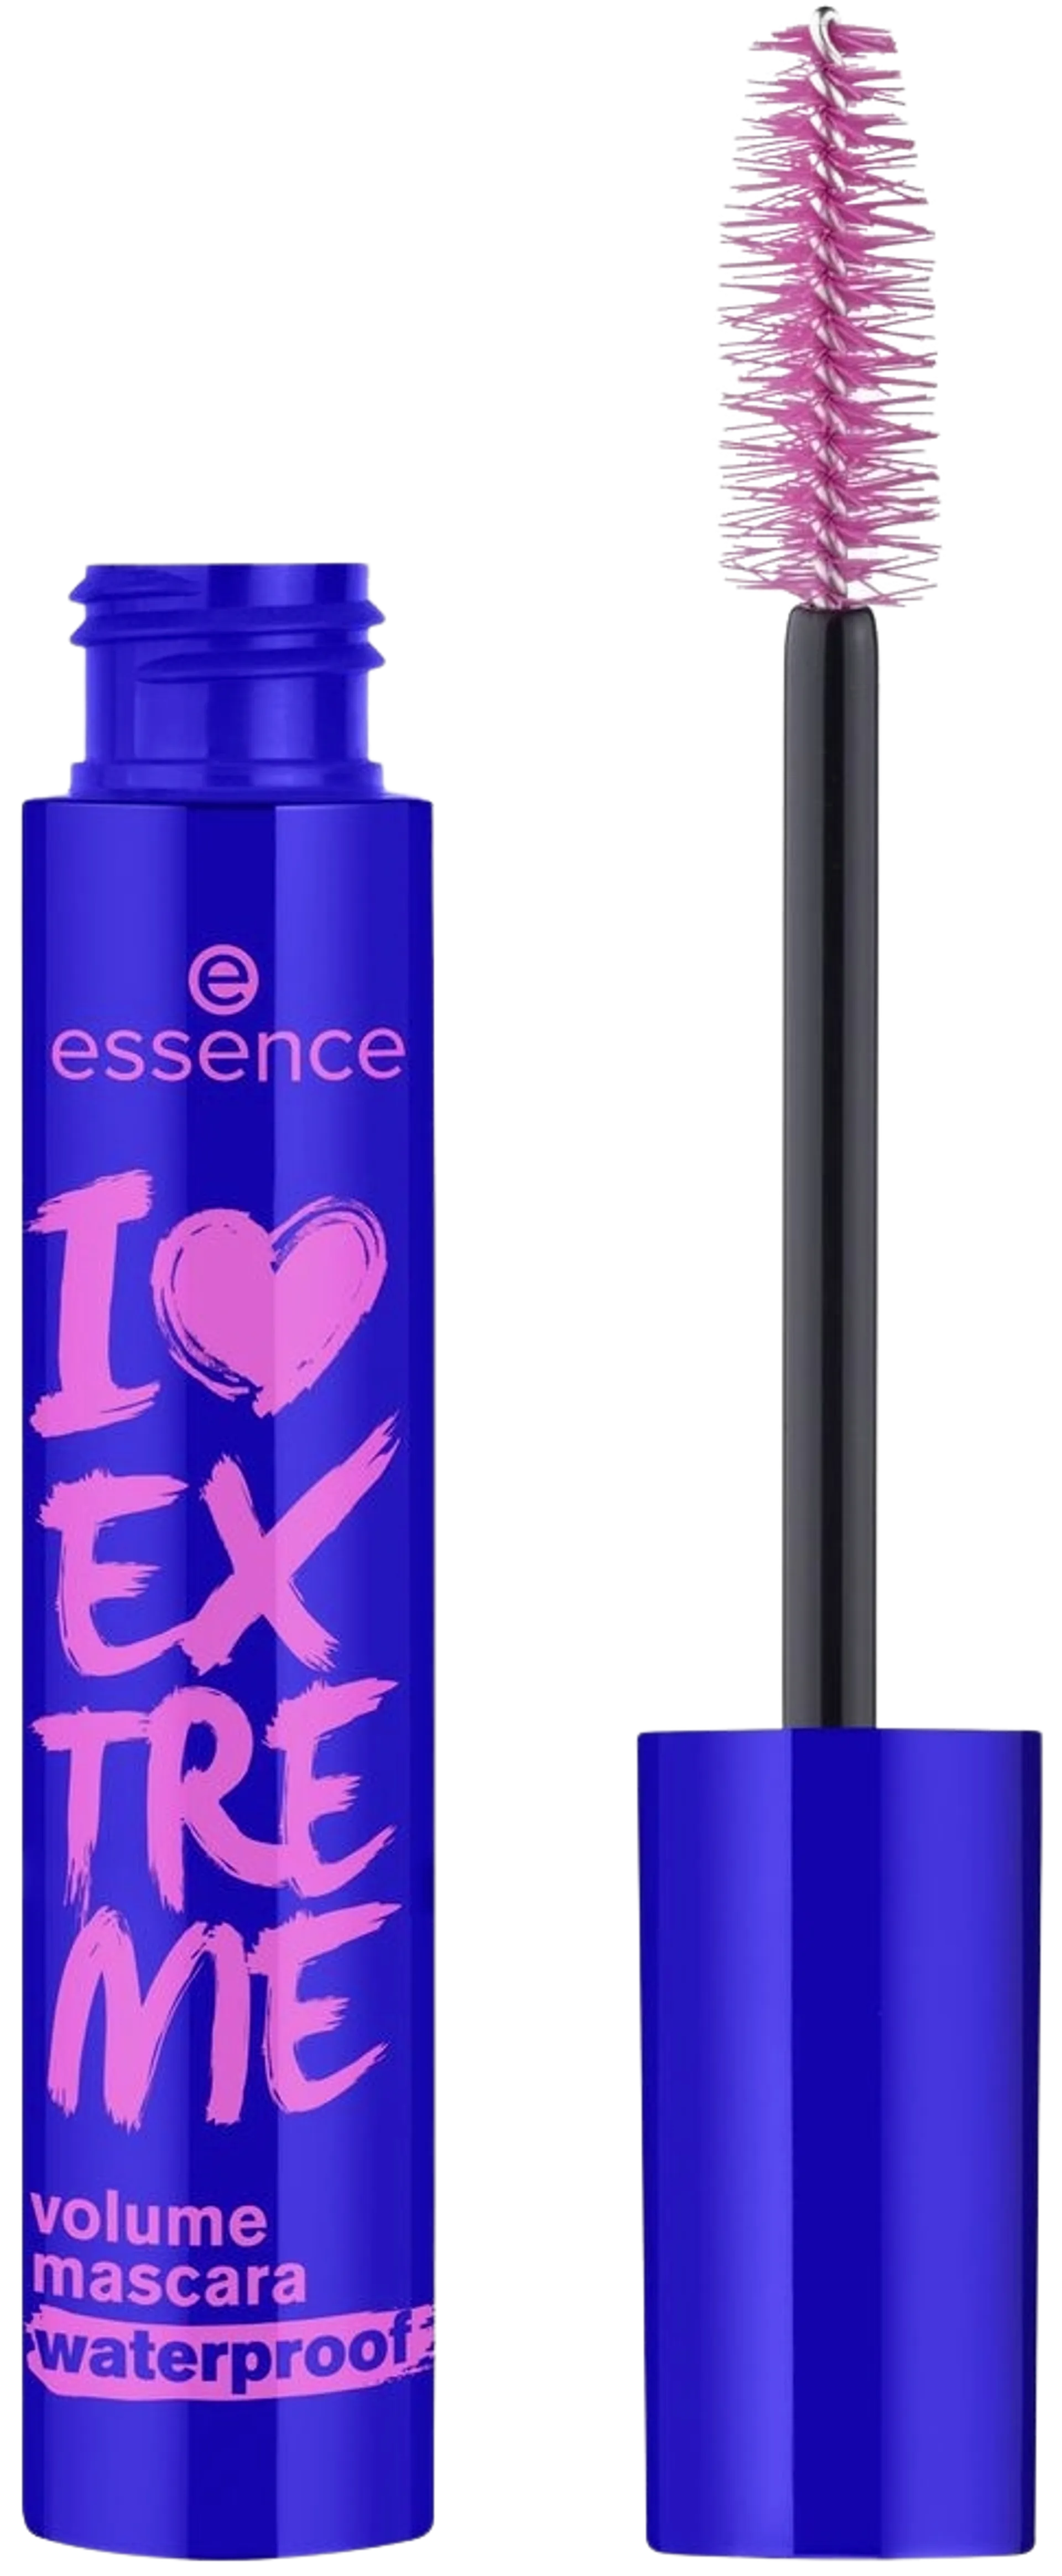 essence I LOVE EXTREME volume mascara waterproof vedenkestävä ripsiväri 12 ml - 1